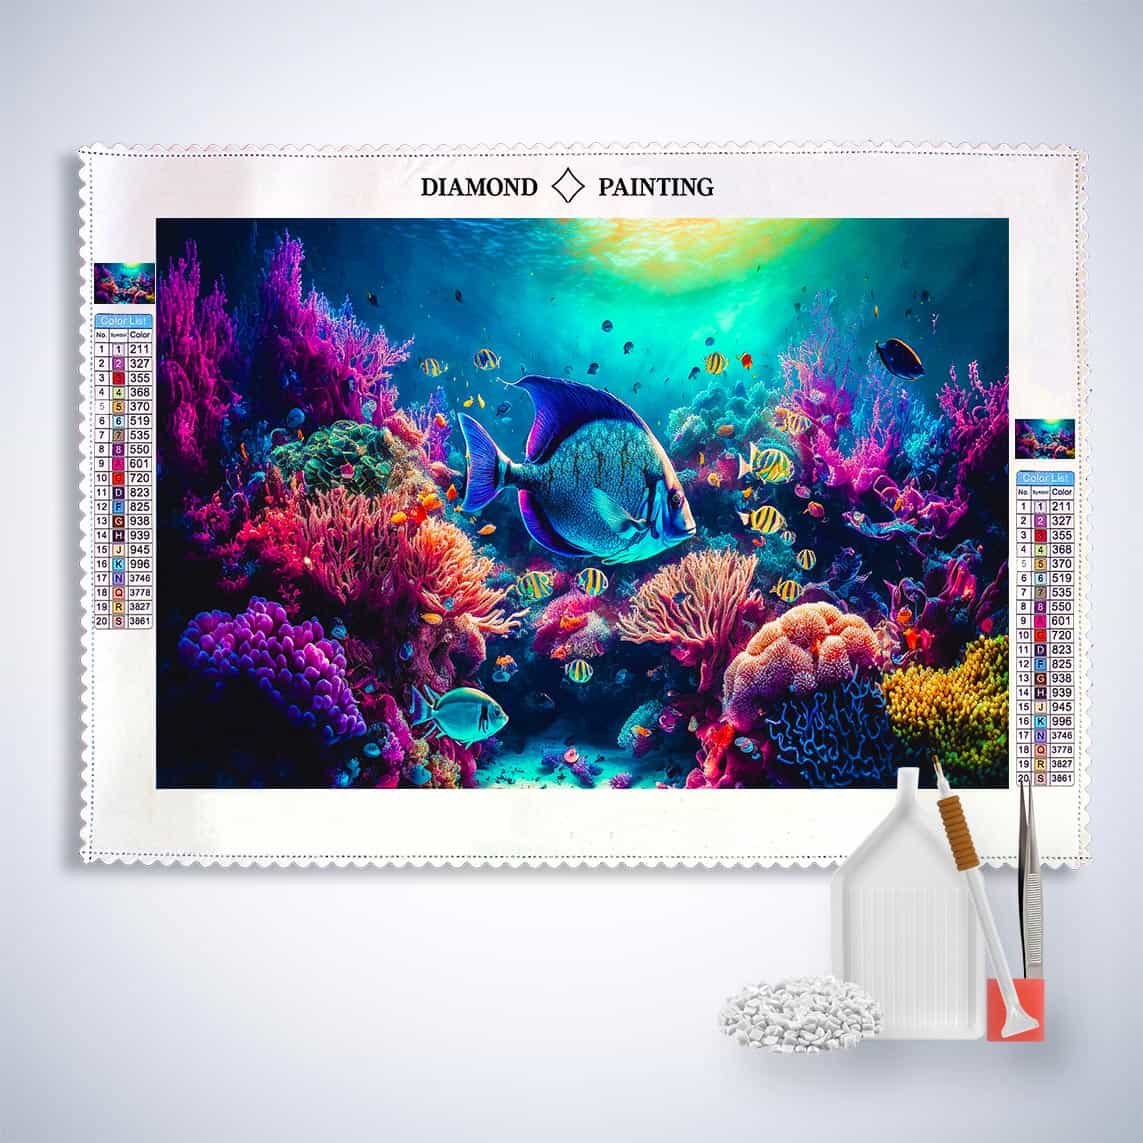 Diamond Painting - Korallen und Fische, Meeresleben - gedruckt in Ultra-HD - Fische, Horizontal, Meer